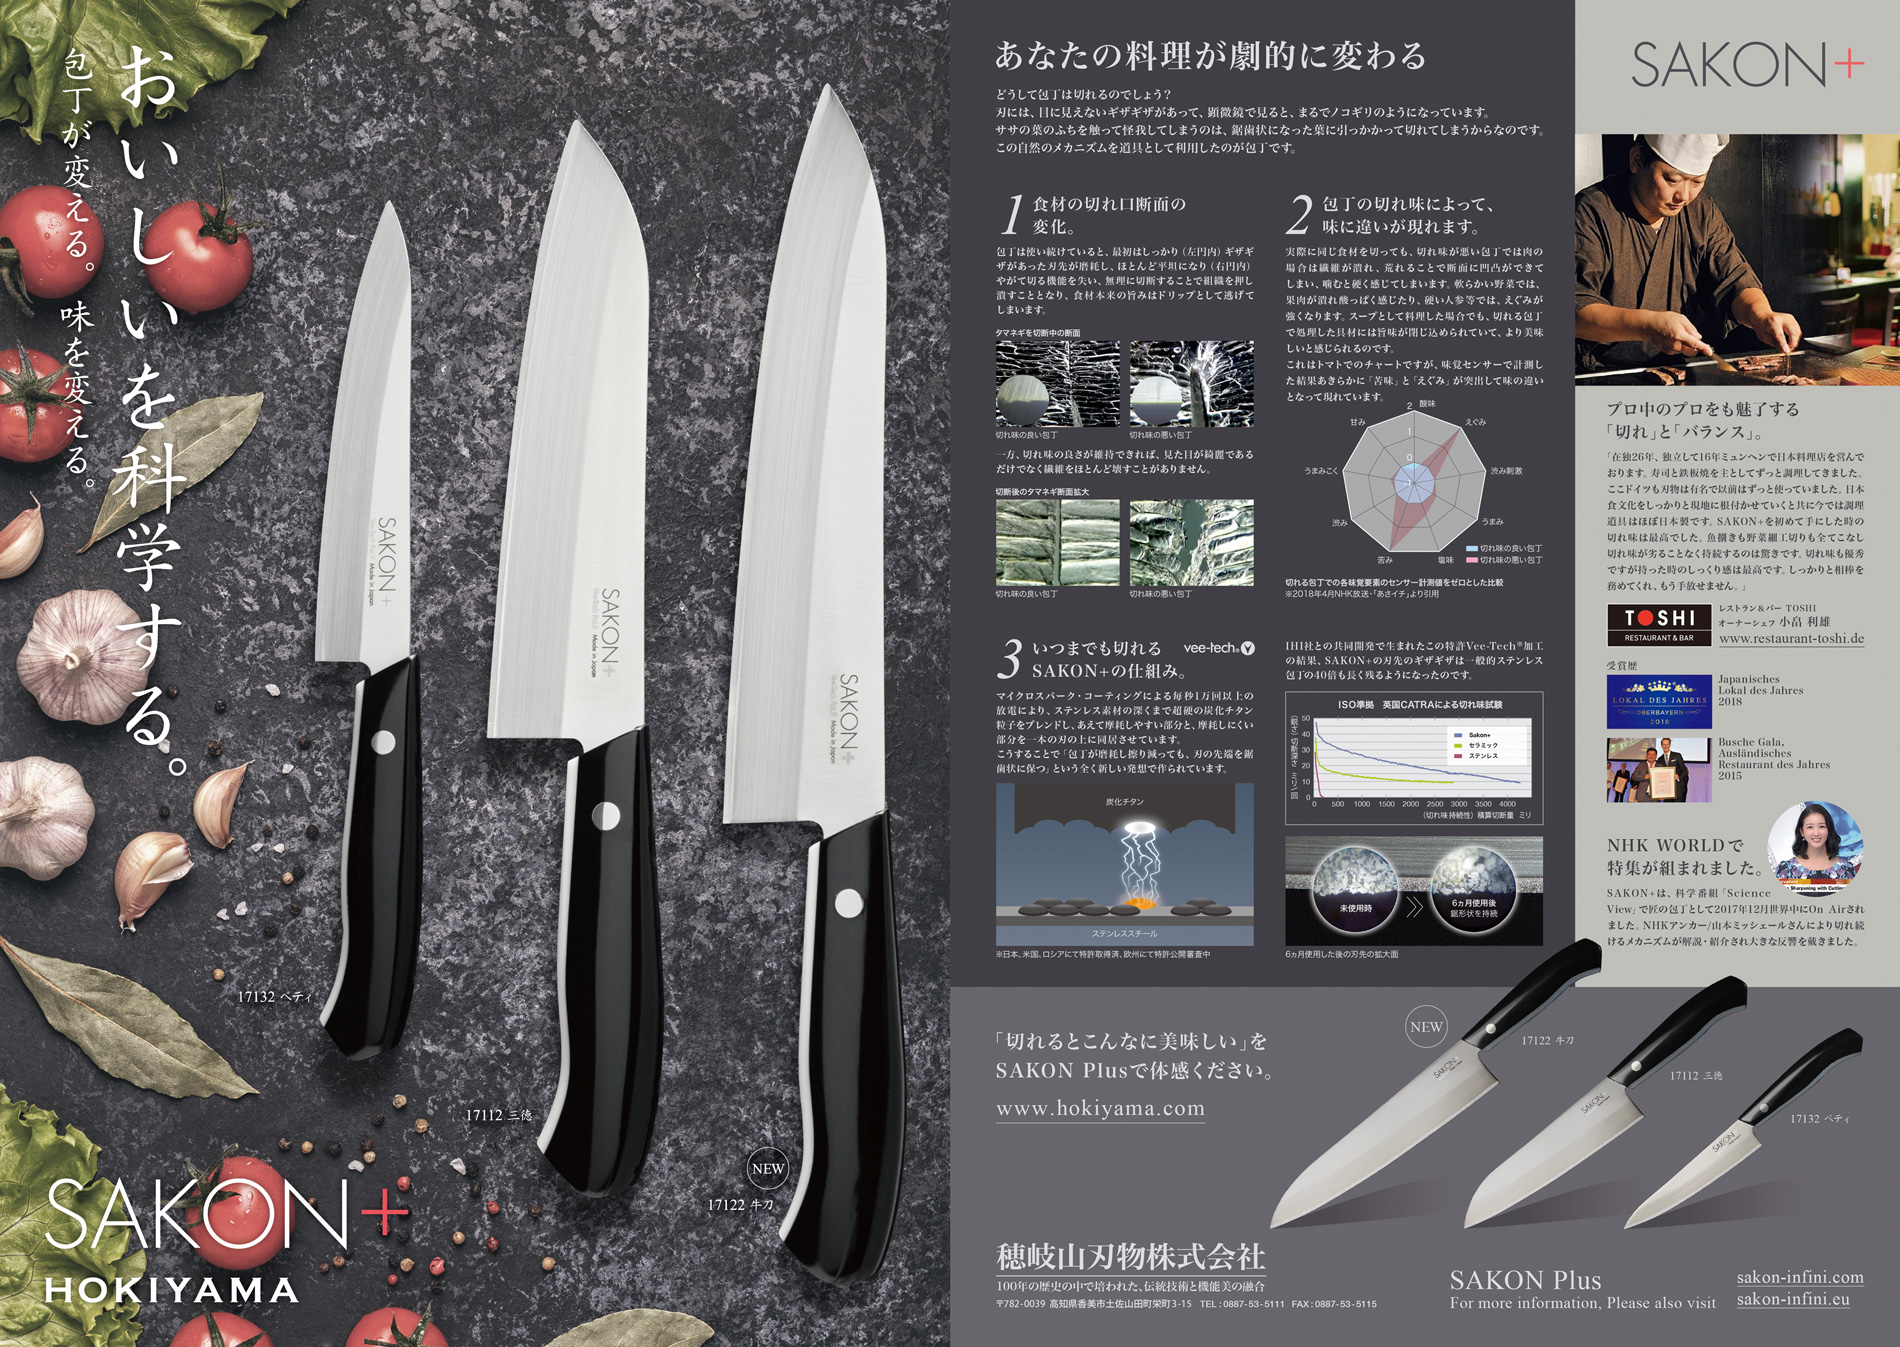 いつまでも切れる包丁、高知県の穂岐山刃物のSAKON+をデザインしました。